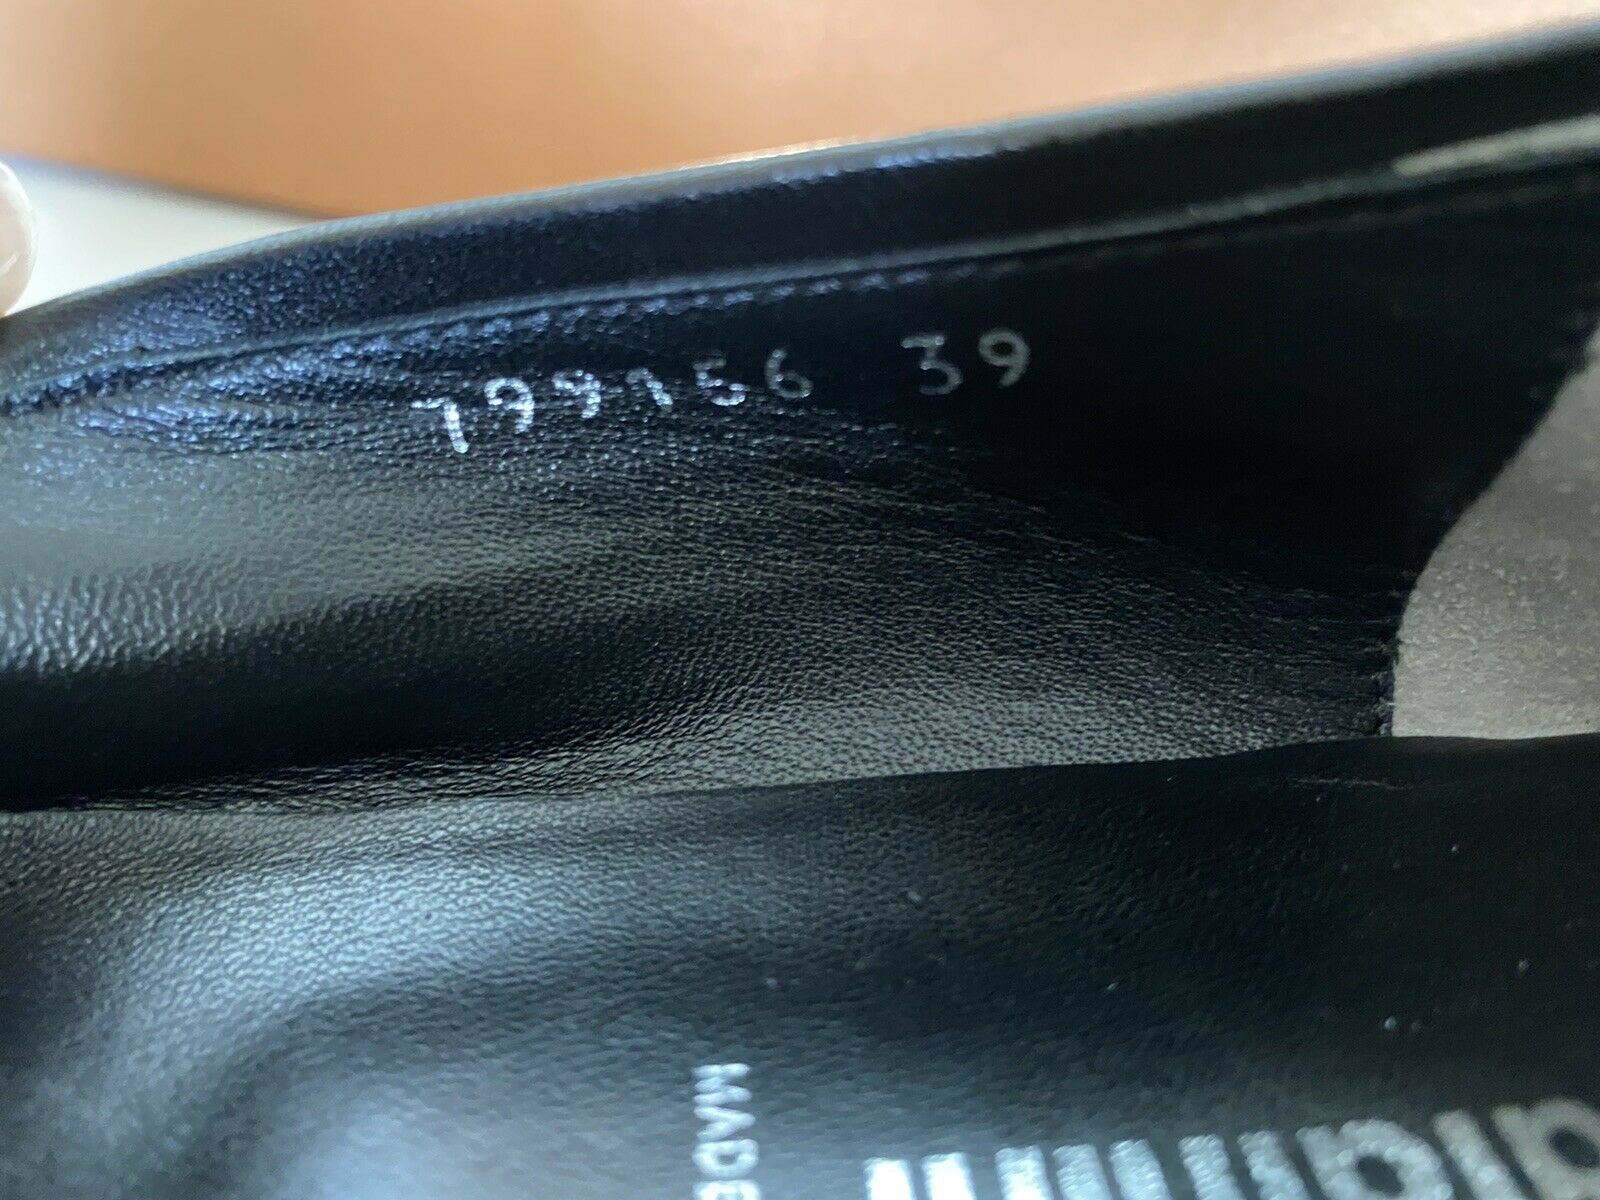 Baldinini Damen-Espadrilles aus schwarzem Leder, 39 Eu, hergestellt in Italien, 799156 